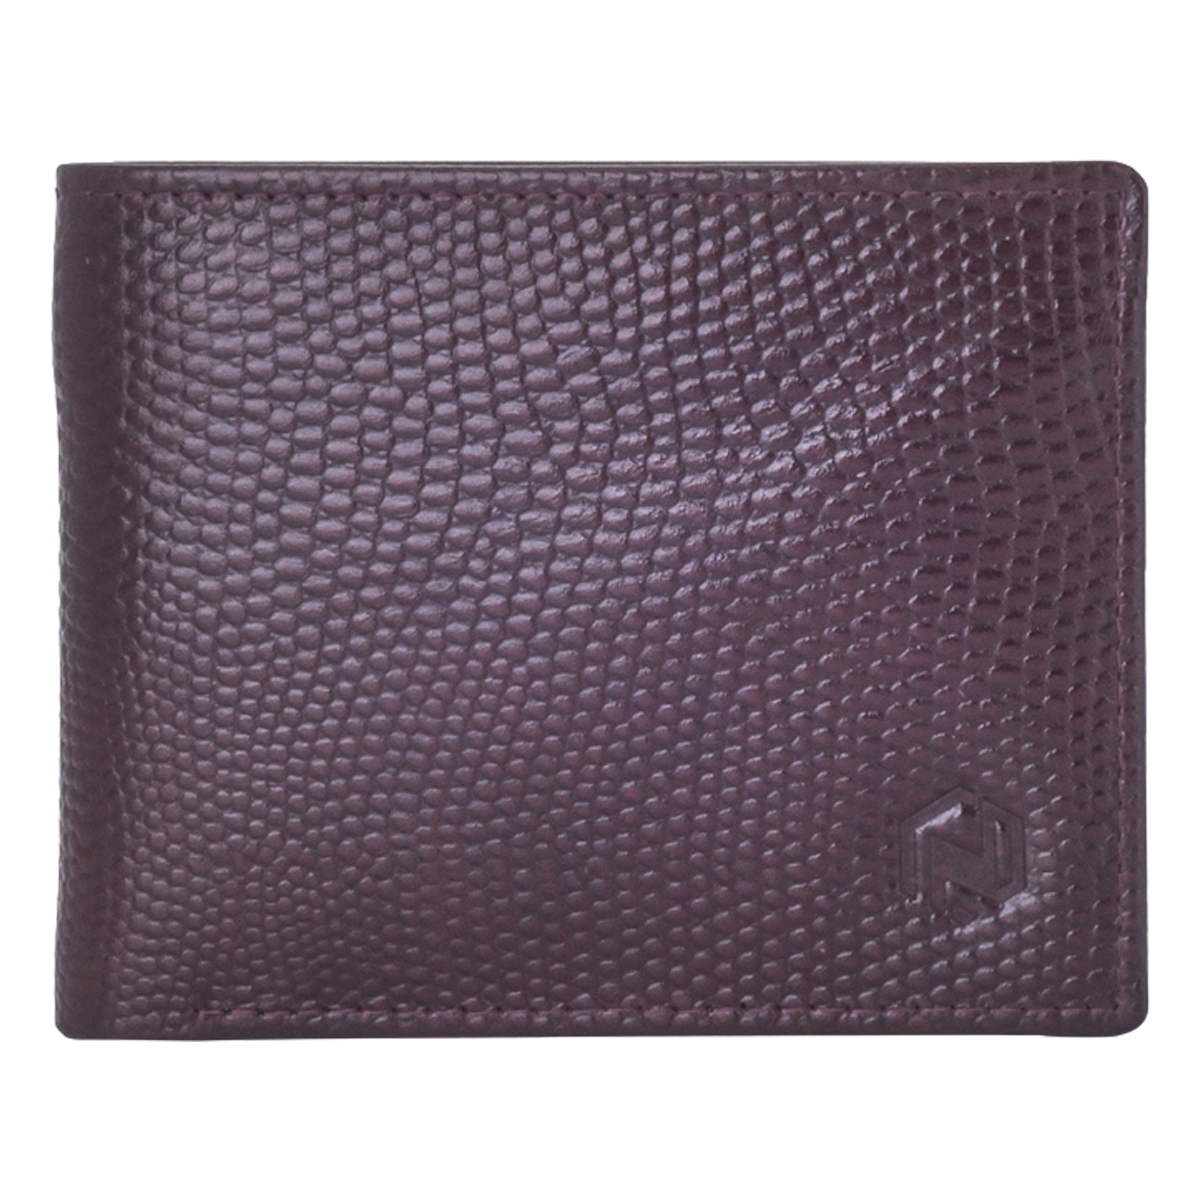 Leather Wallet - Nayaab Barcelona